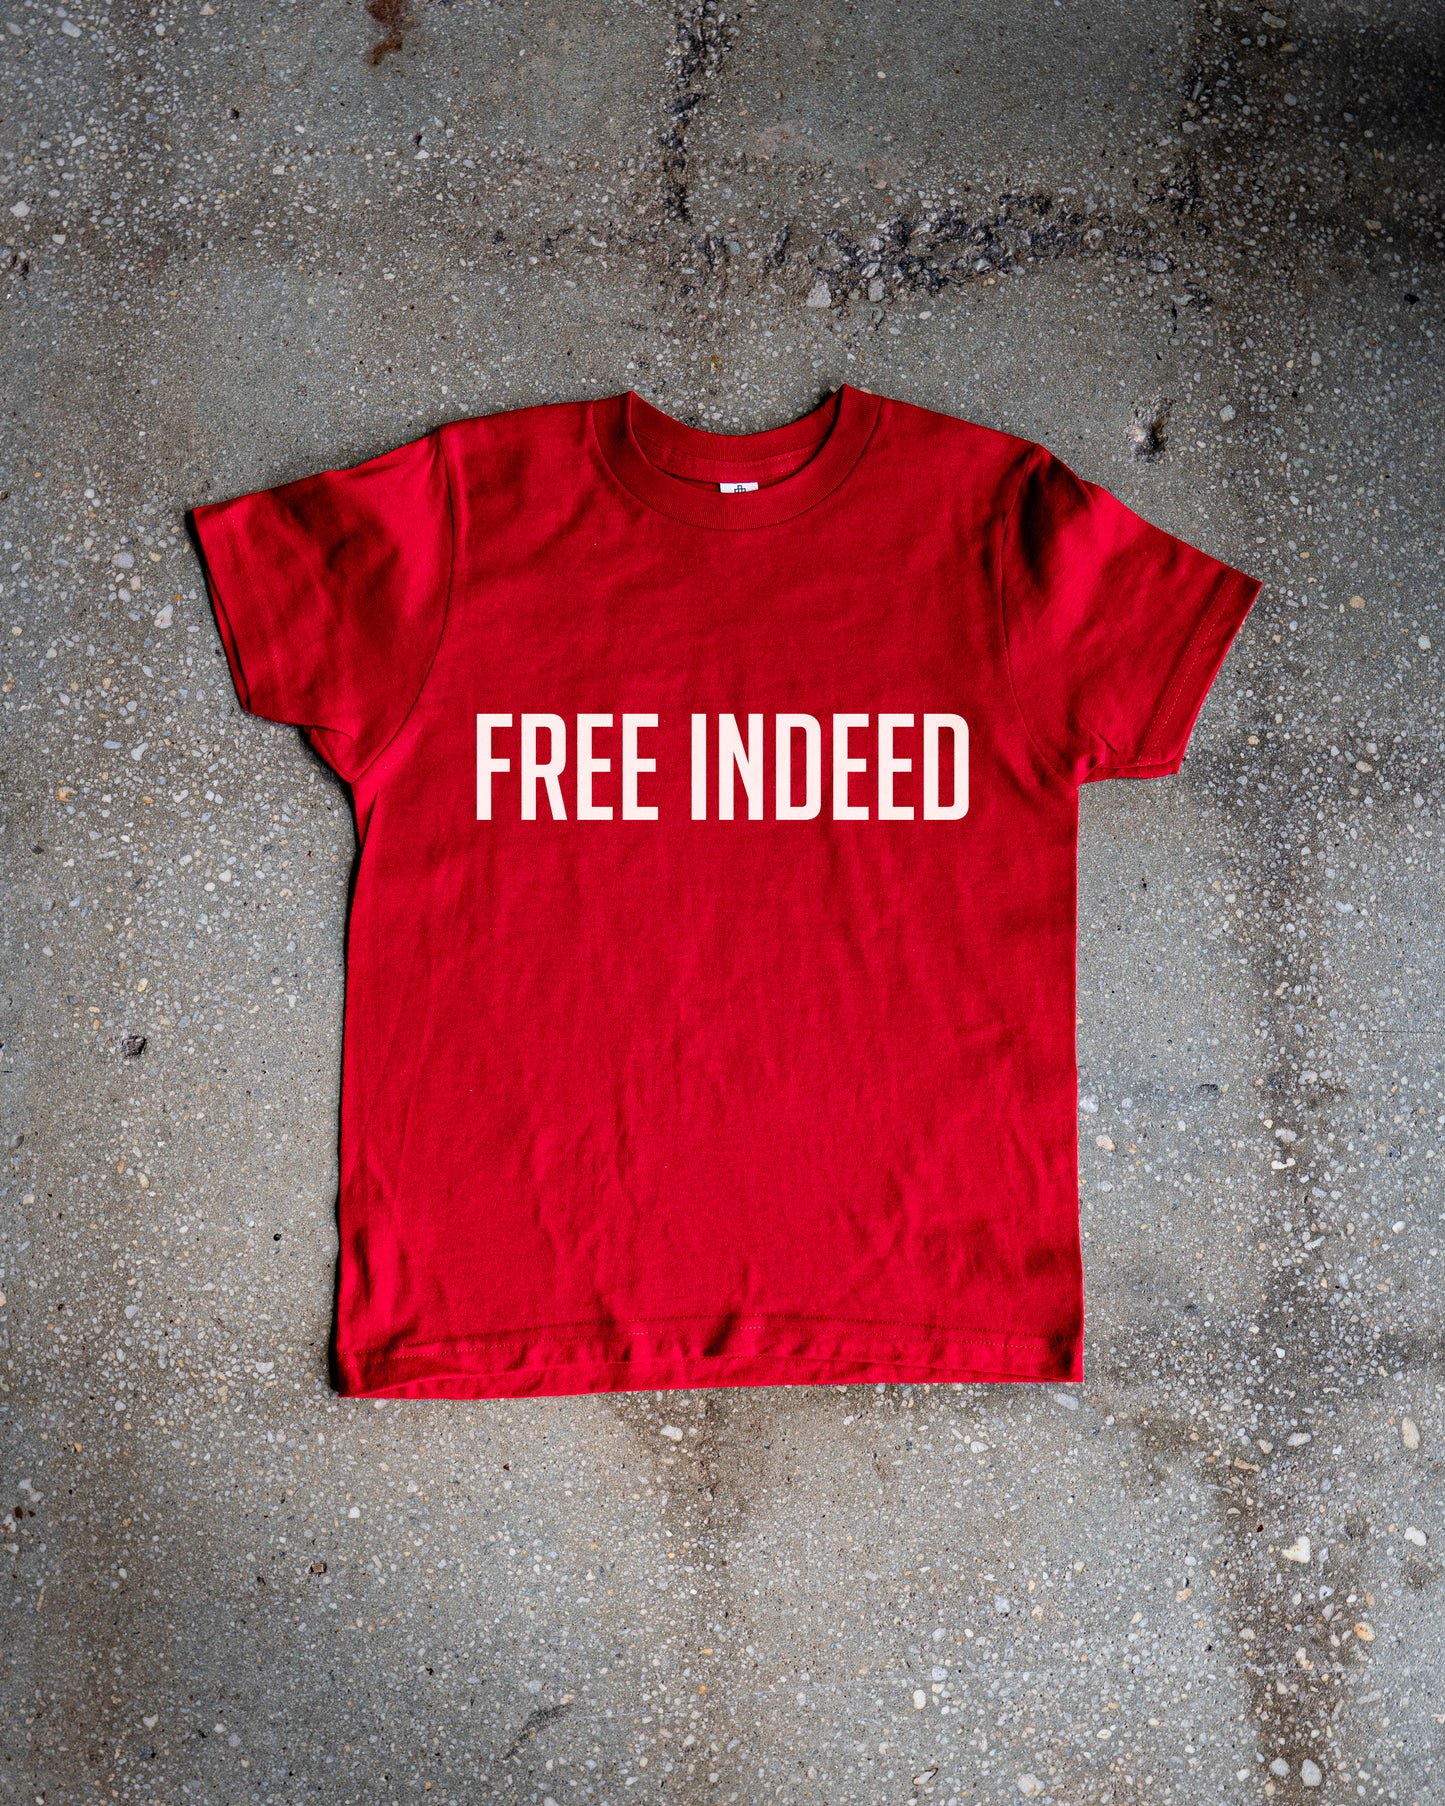 FREE INDEED Kids T-shirt